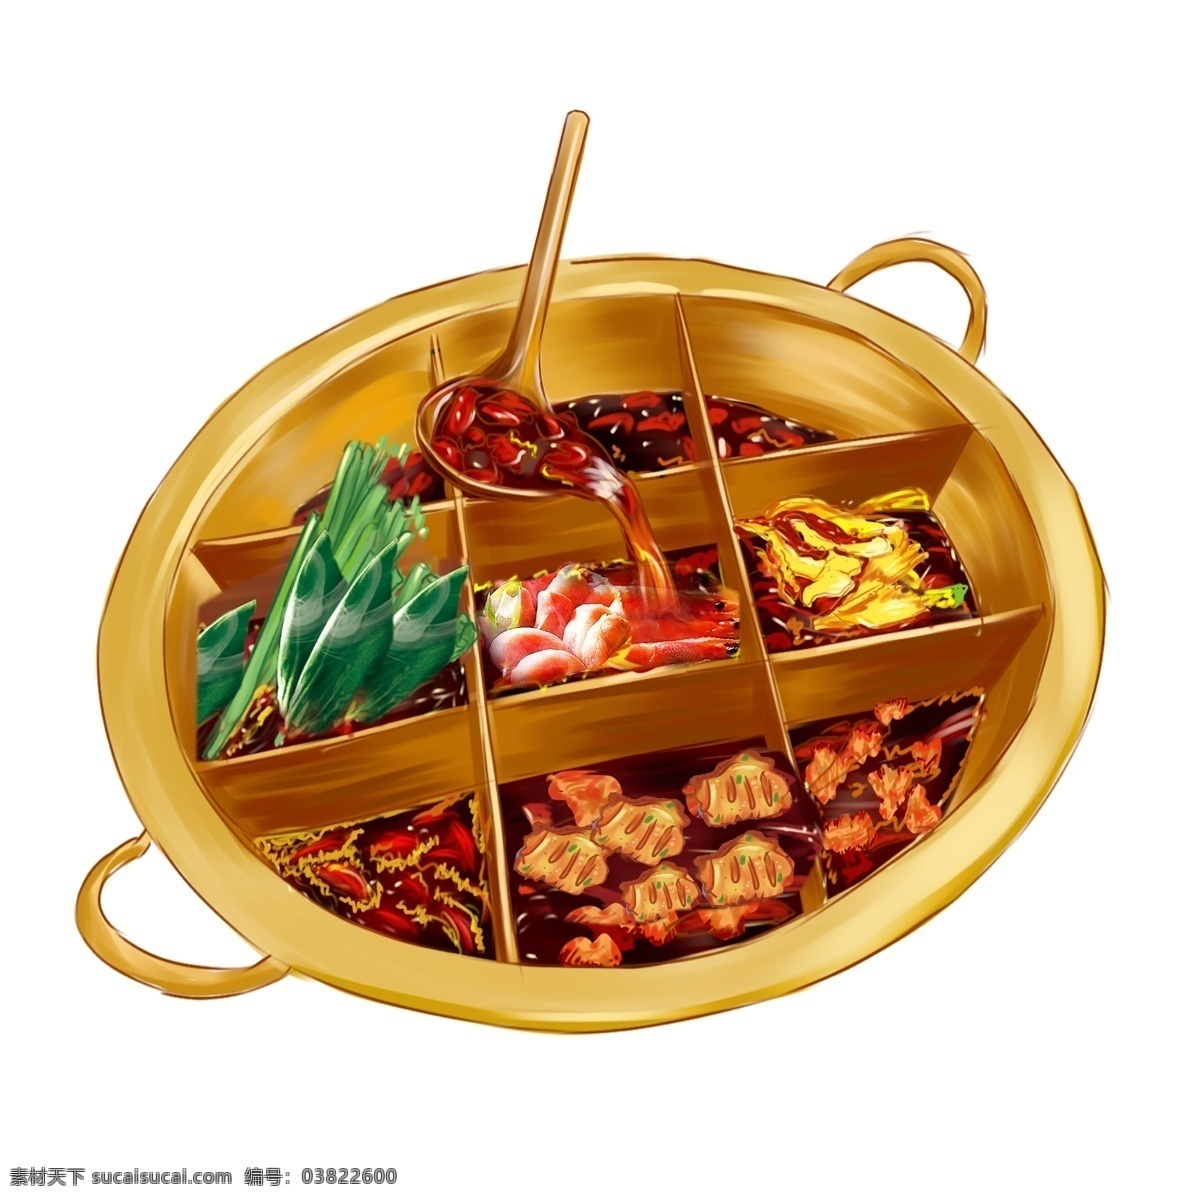 重庆火锅 食物 插画 火锅 卡通 彩色 水彩 小清新 创意 装饰 图案 手绘风